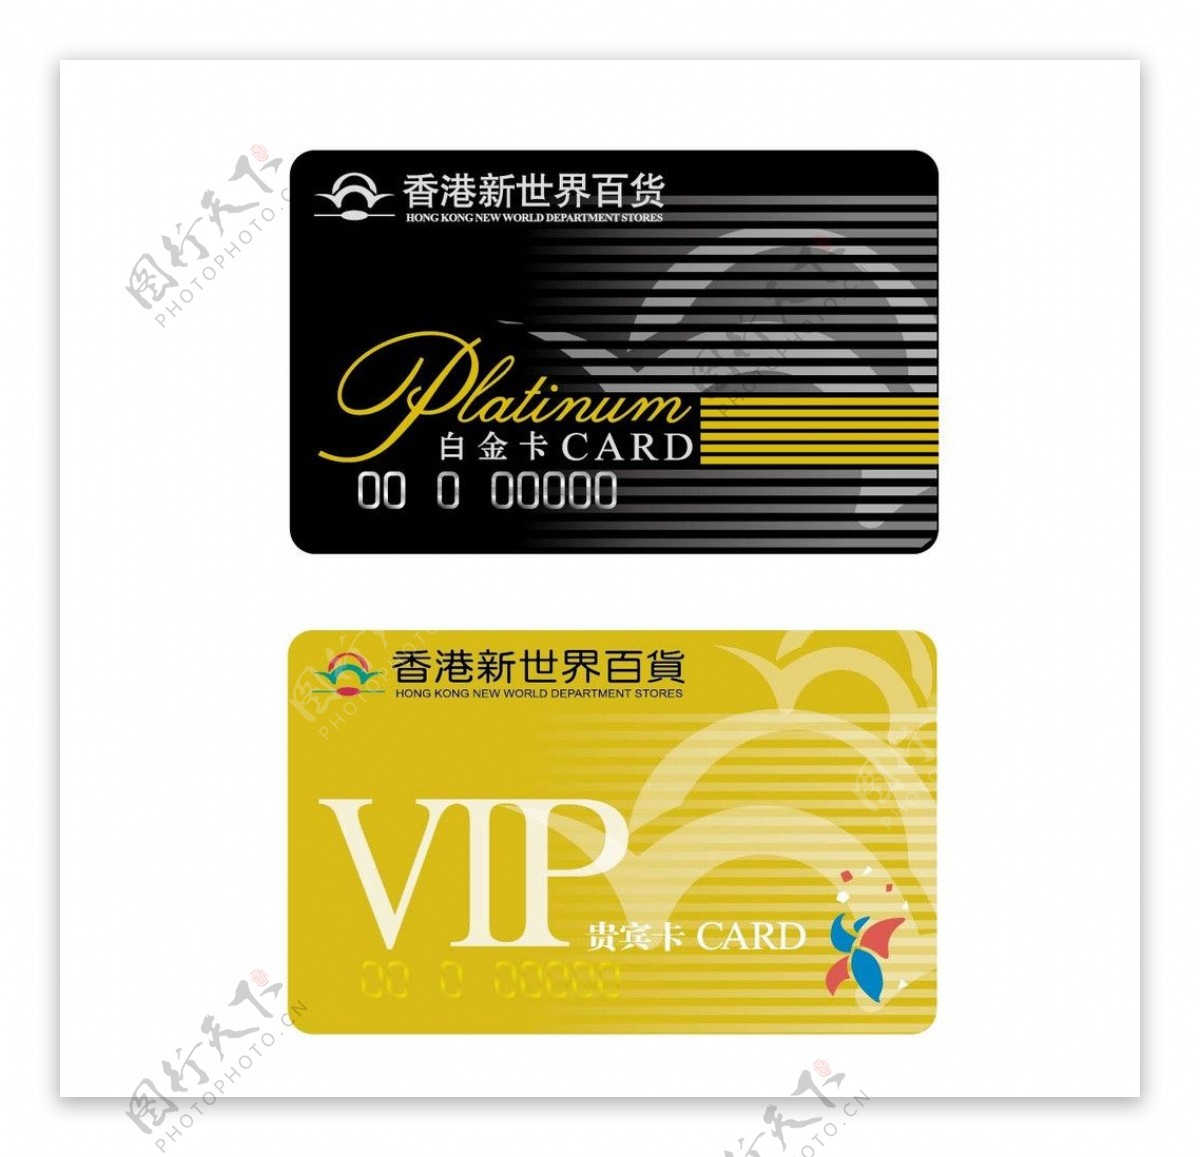 百货业VIP卡图片